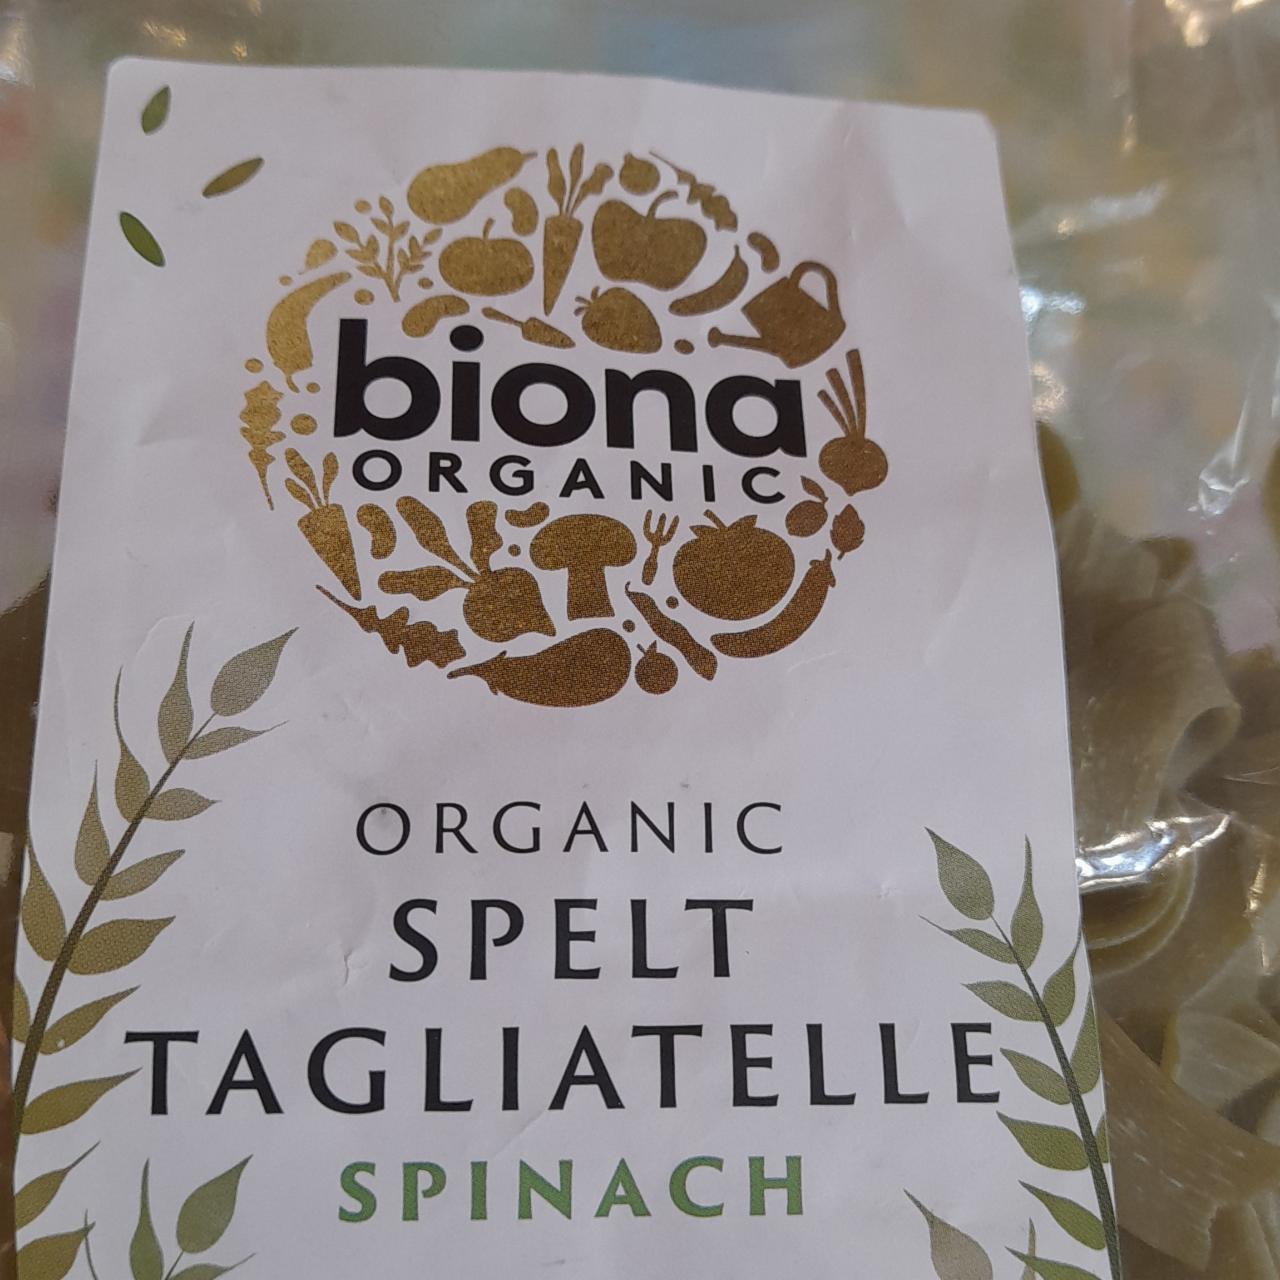 Fotografie - Organic spelt tagliatelle spinach Biona organic